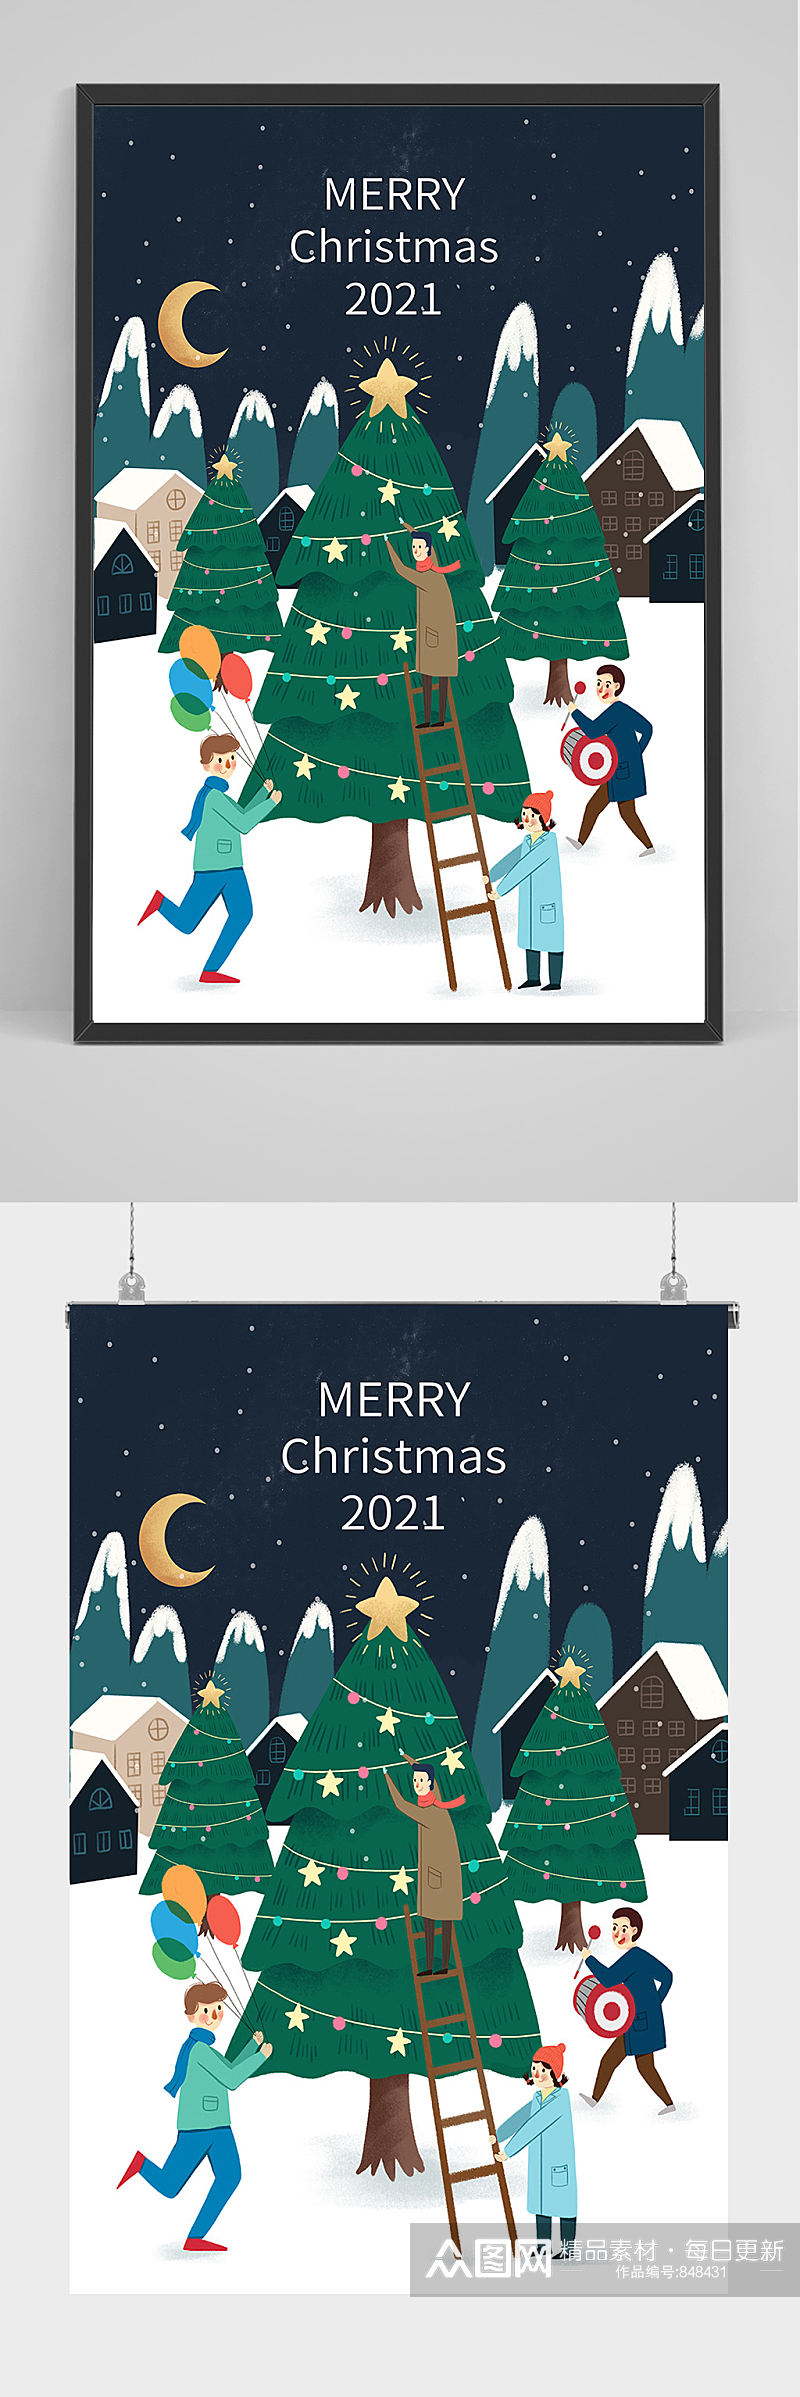 一起制作圣诞树插画设计素材